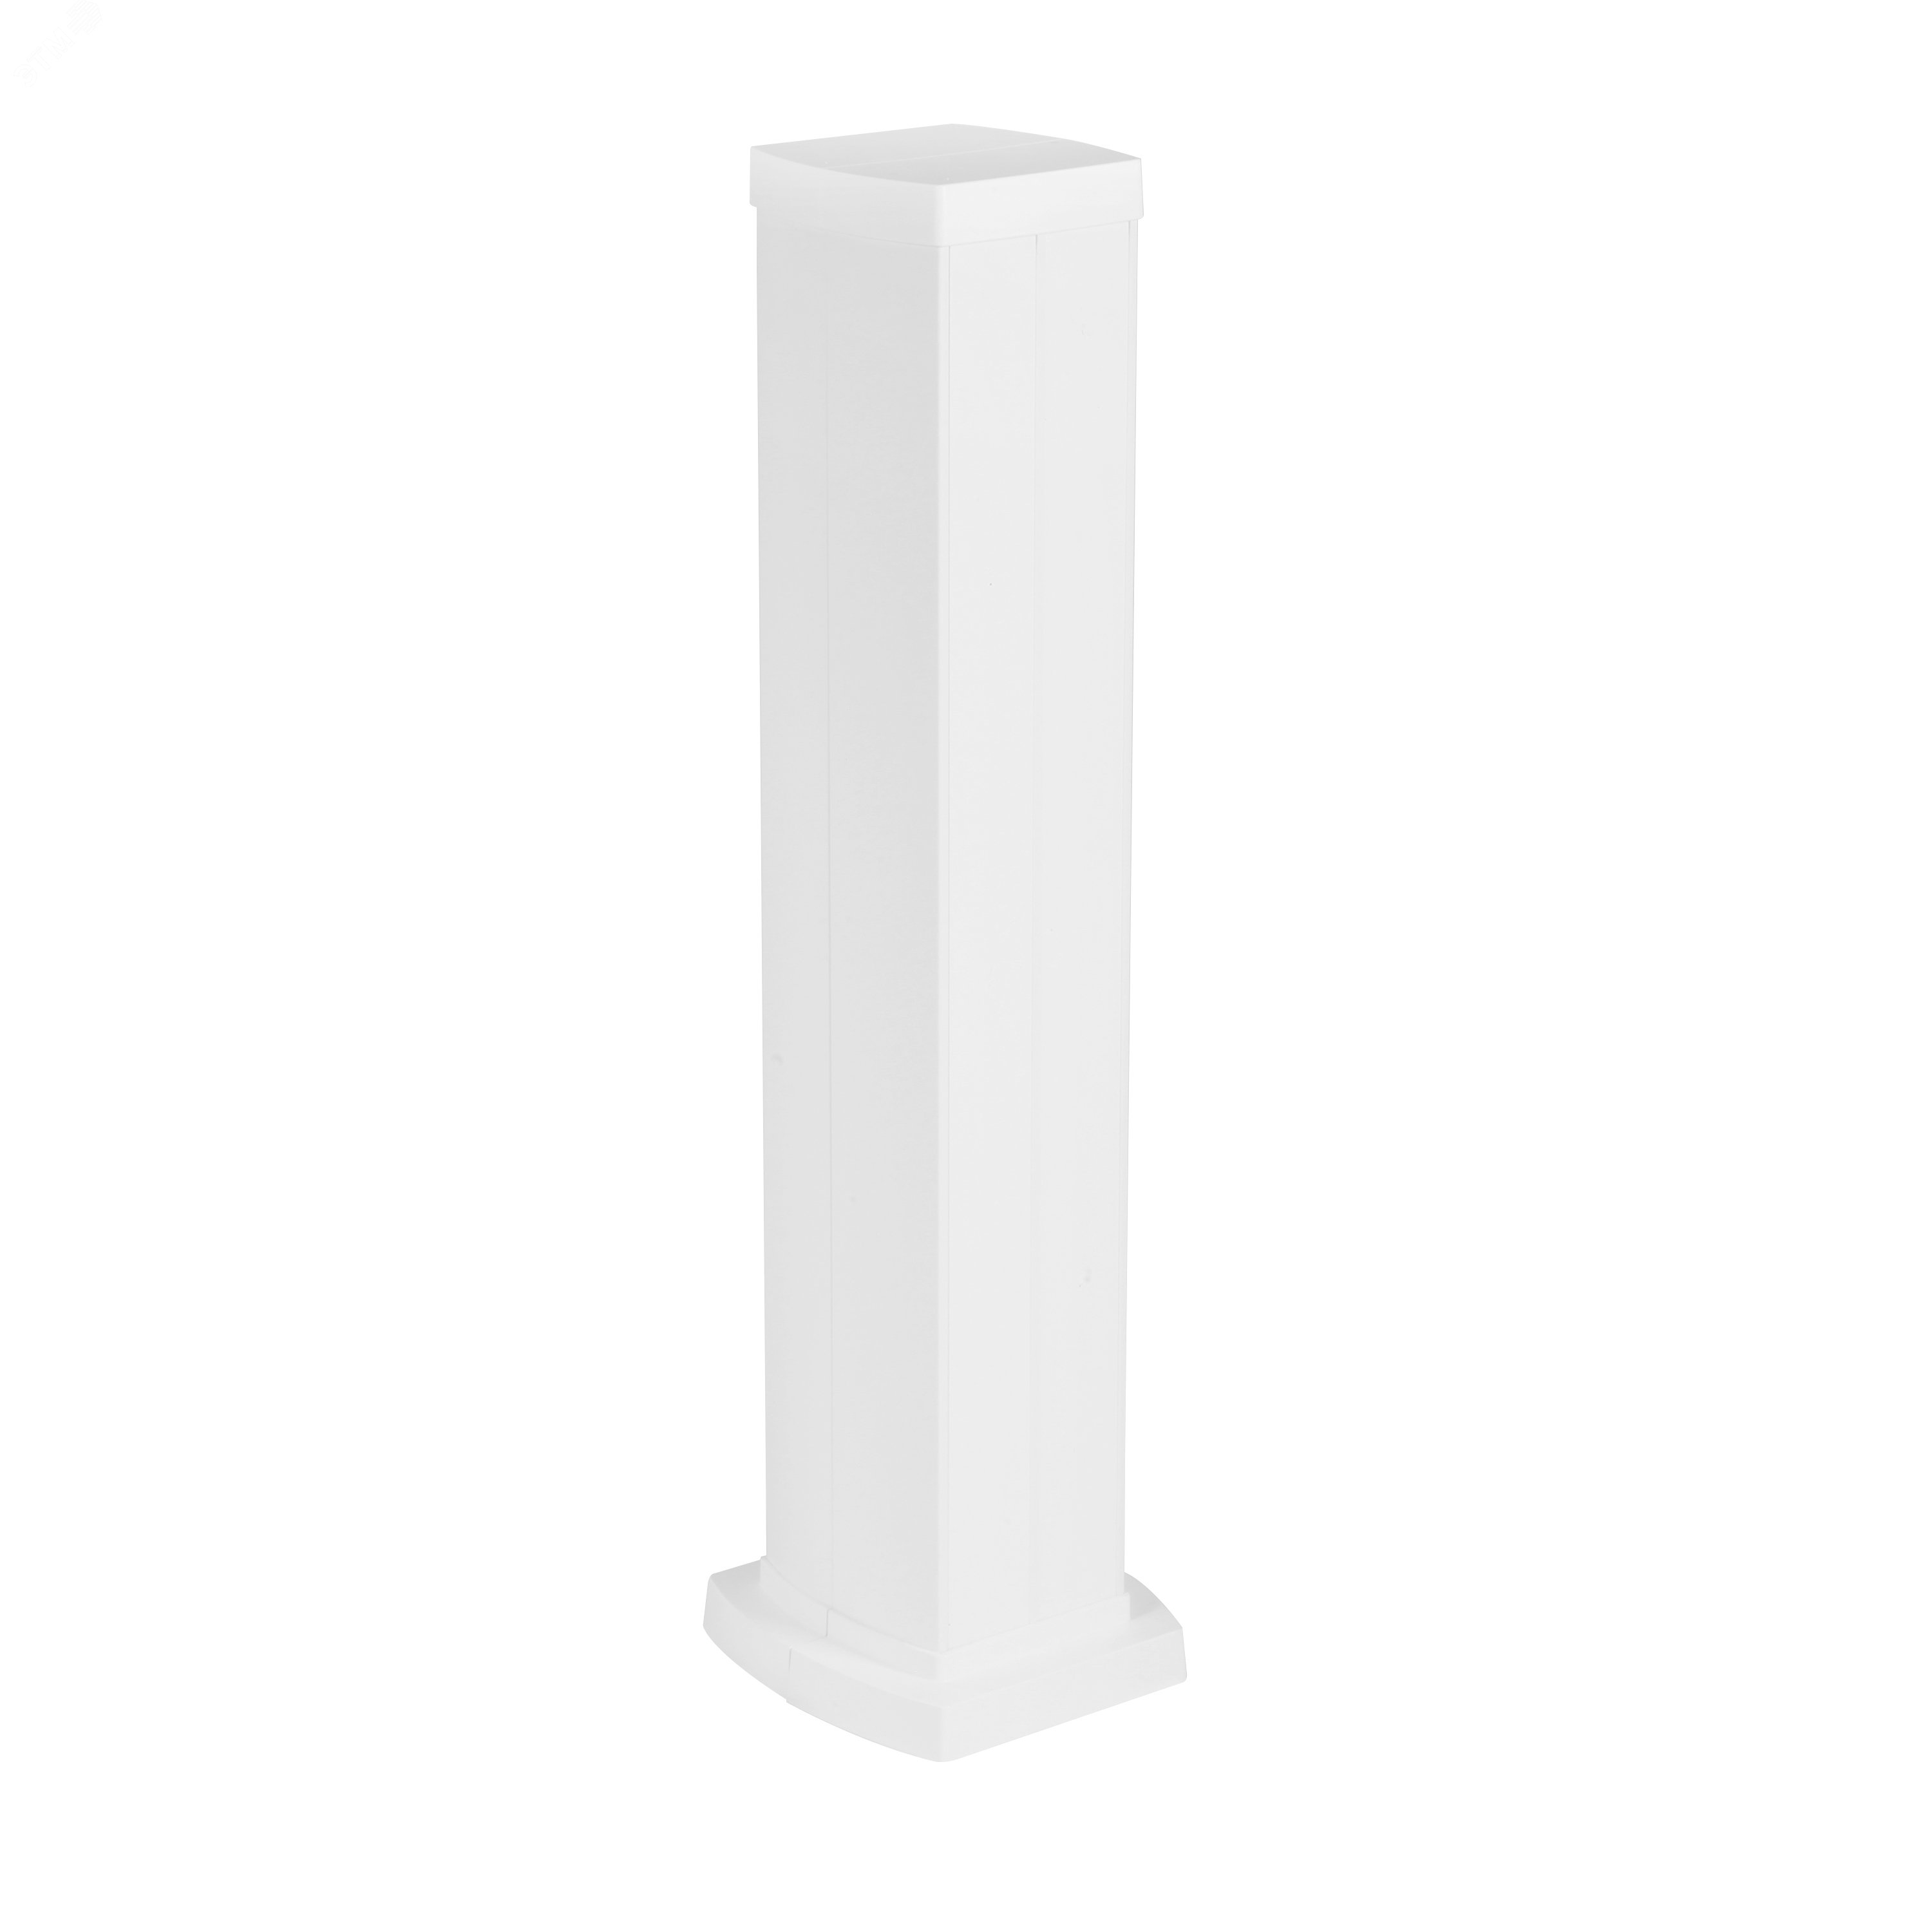 Snap-On мини-колонна алюминиевая с крышкой из пластика 4 секции, высота 0,68 метра, цвет белый 653043 Legrand - превью 2